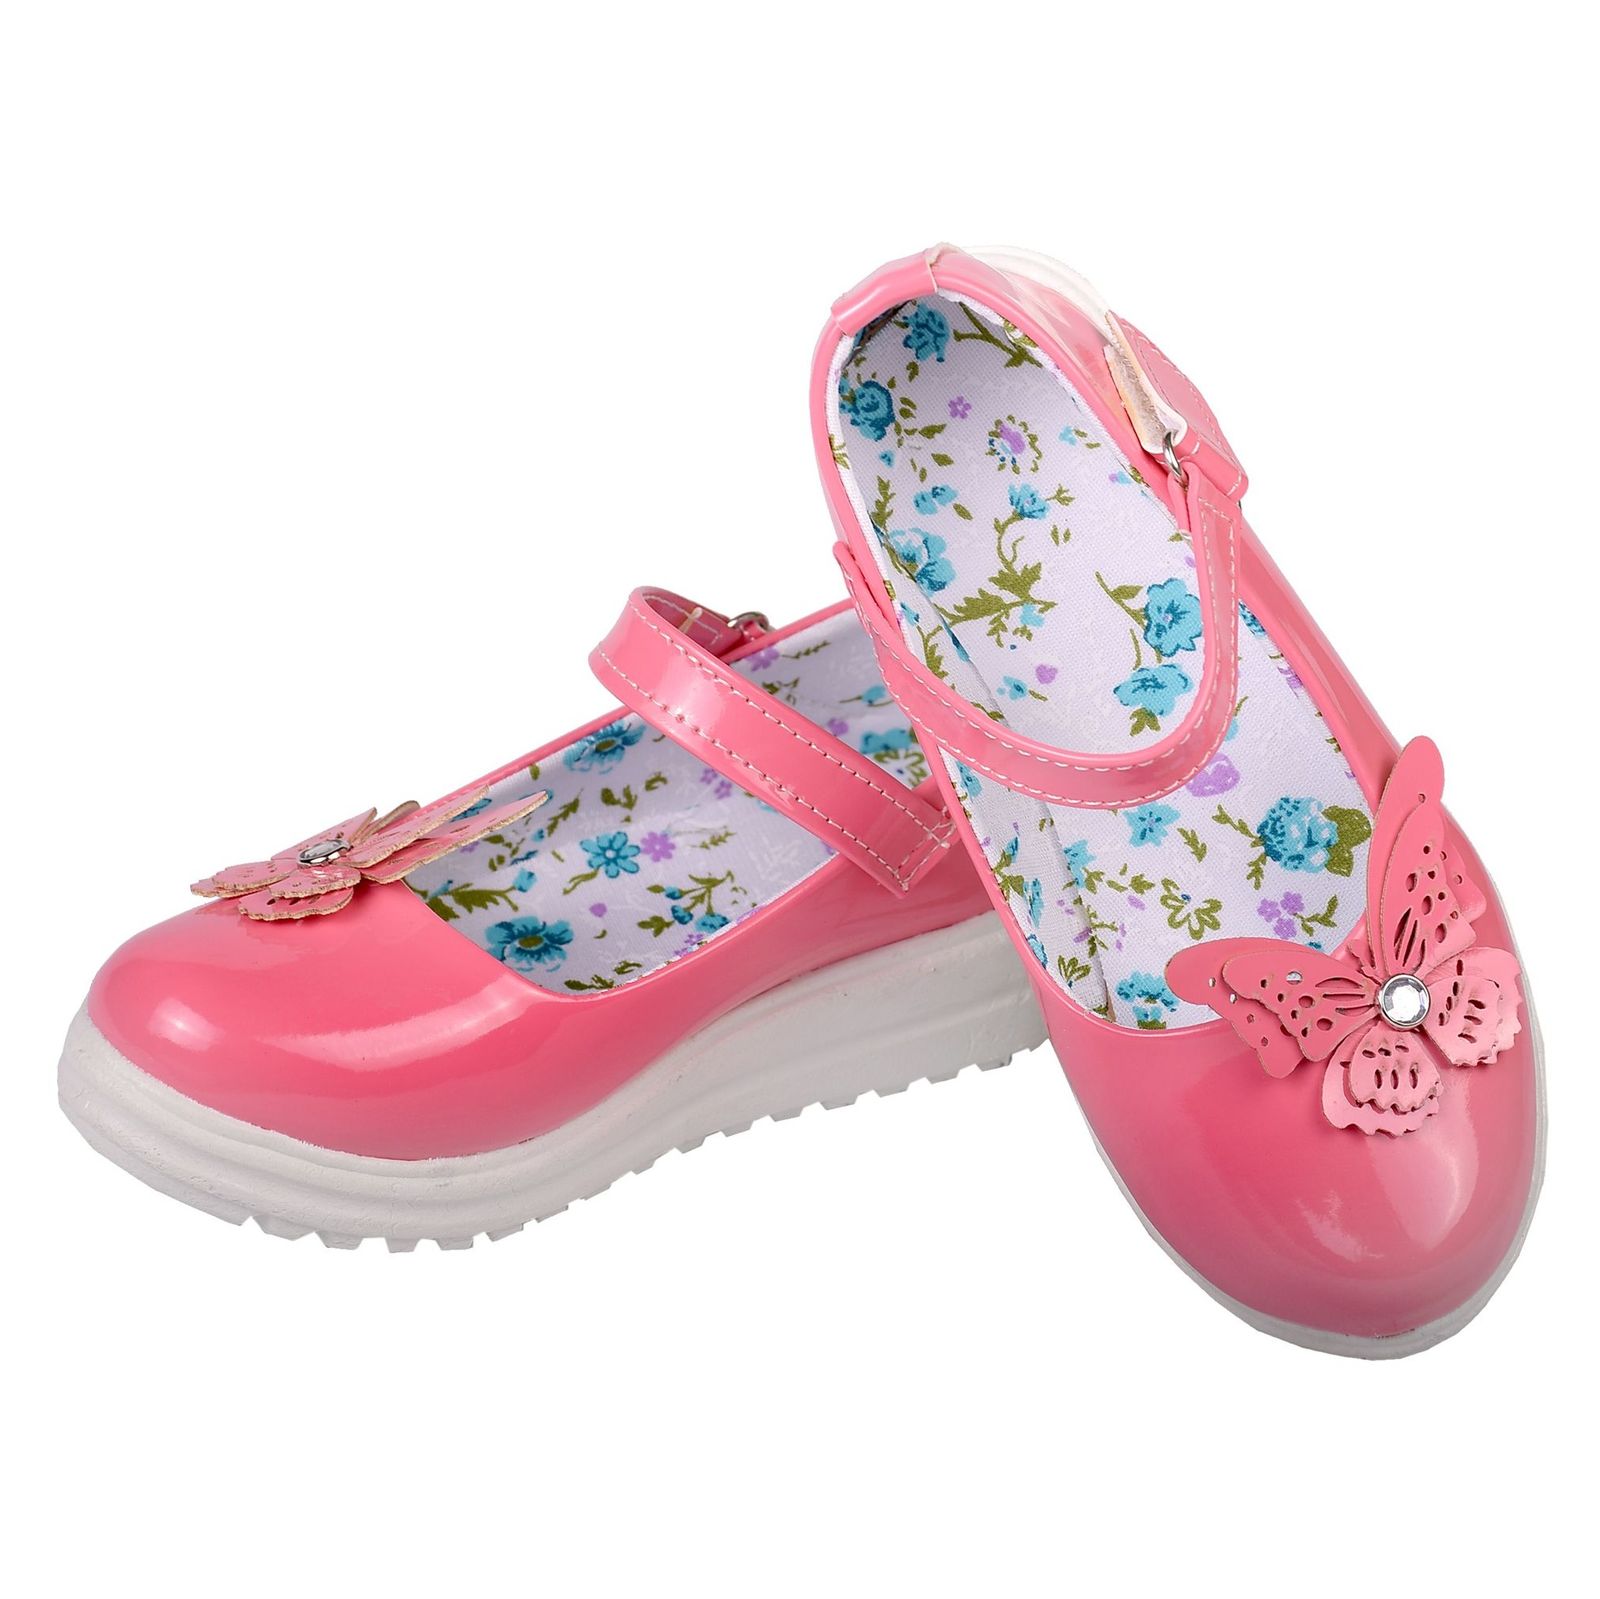 کفش دخترانه مدل پروانه کد 3558 -  - 3